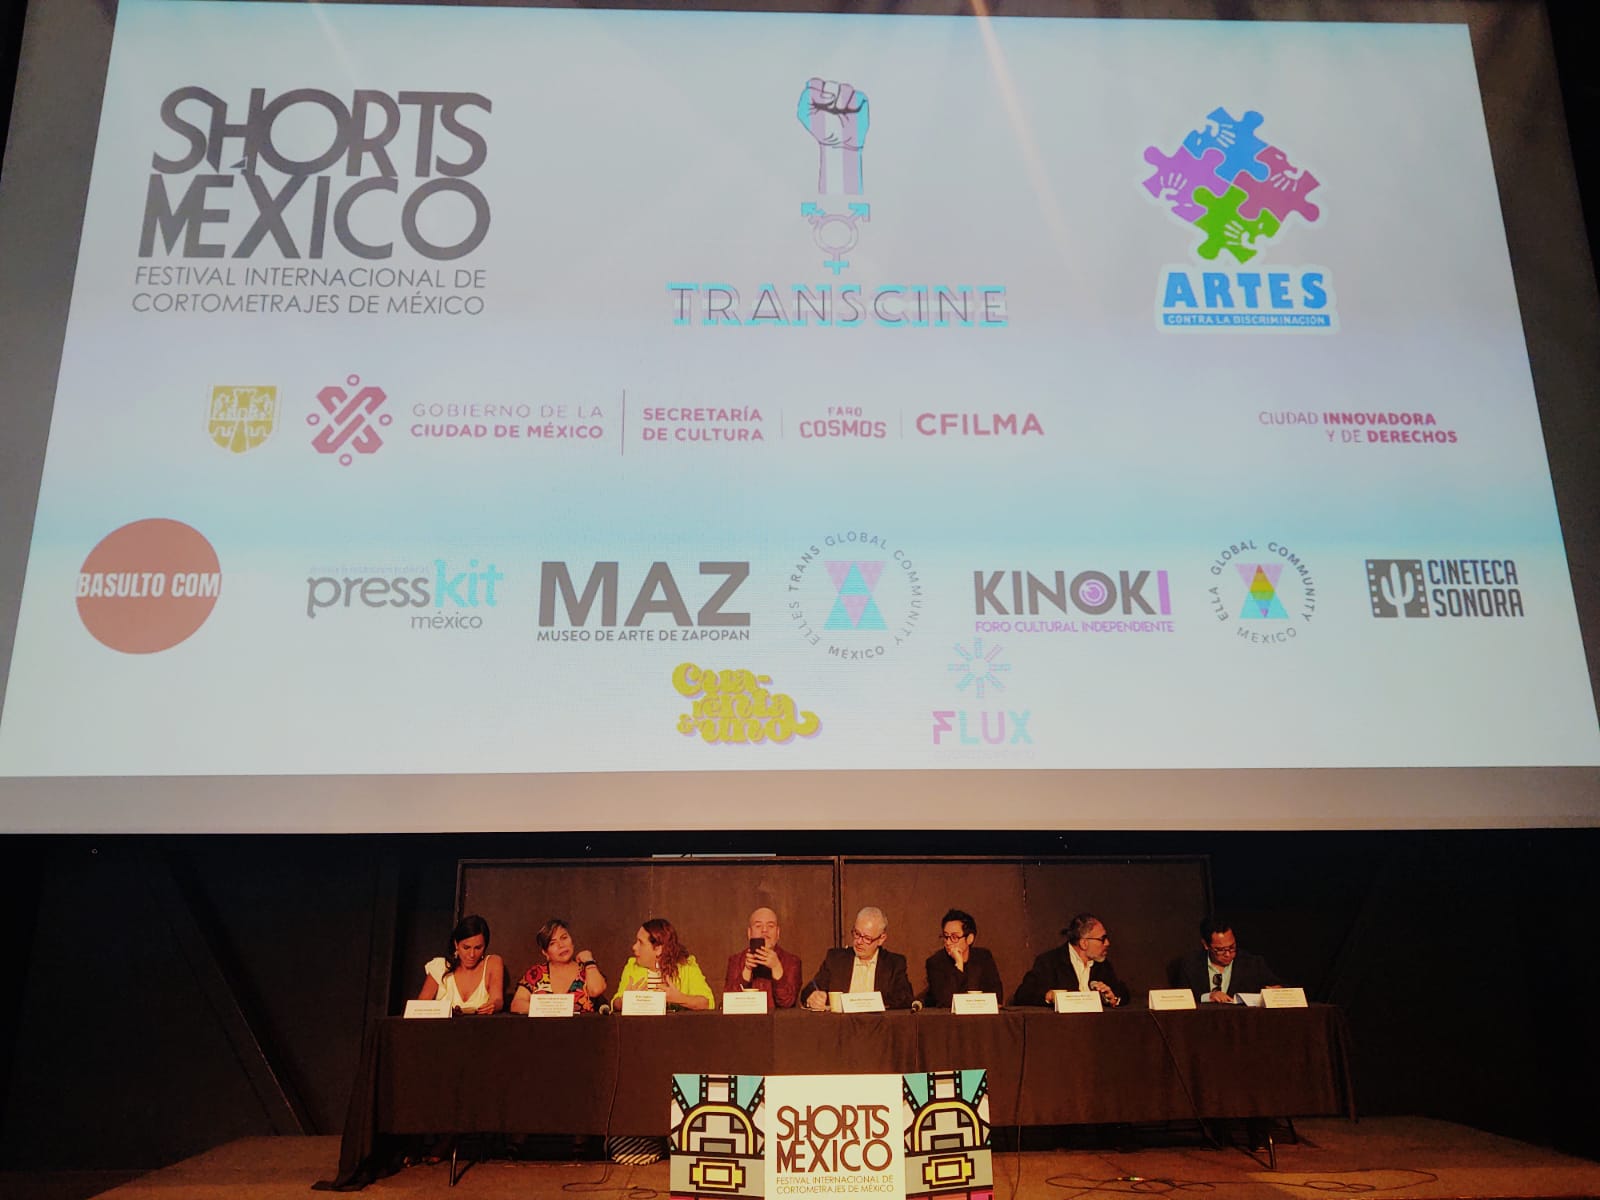 Shorts México